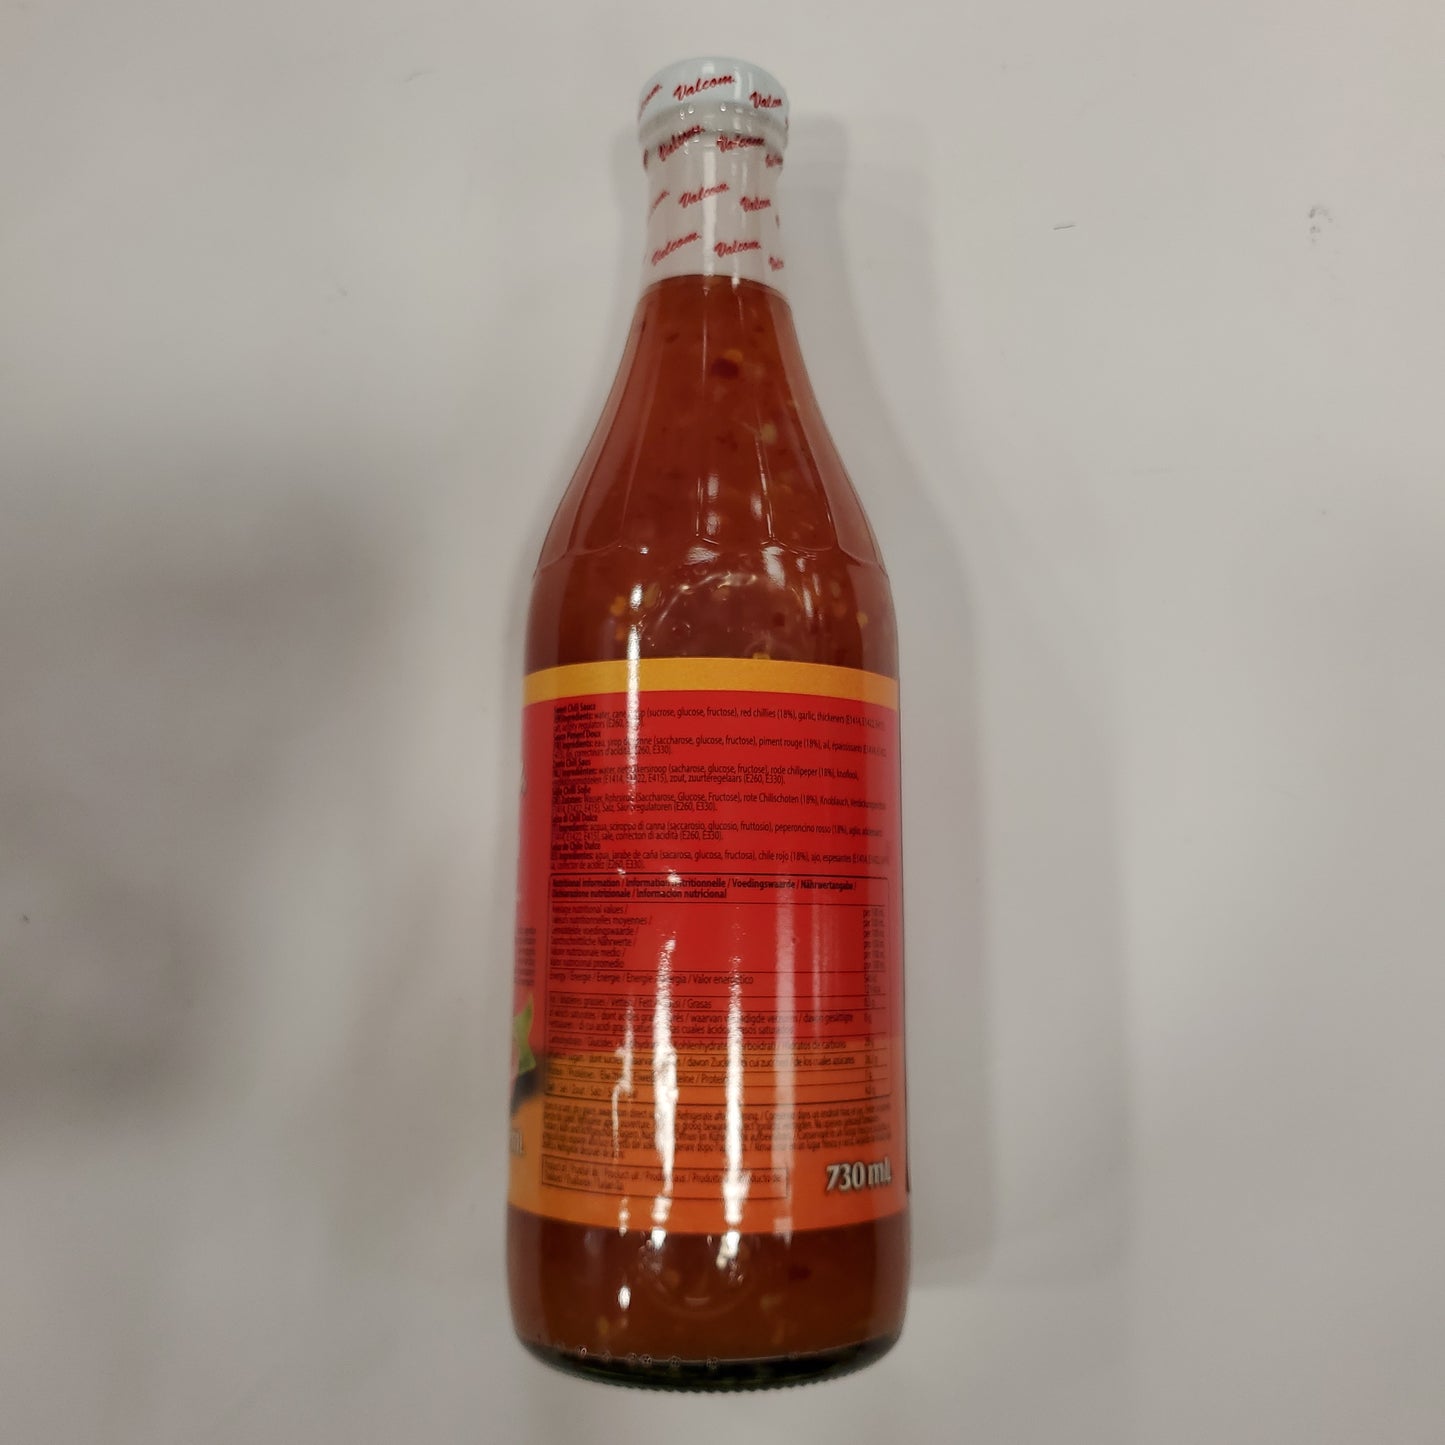 Valcom Sweet Chili Sauce 730ml